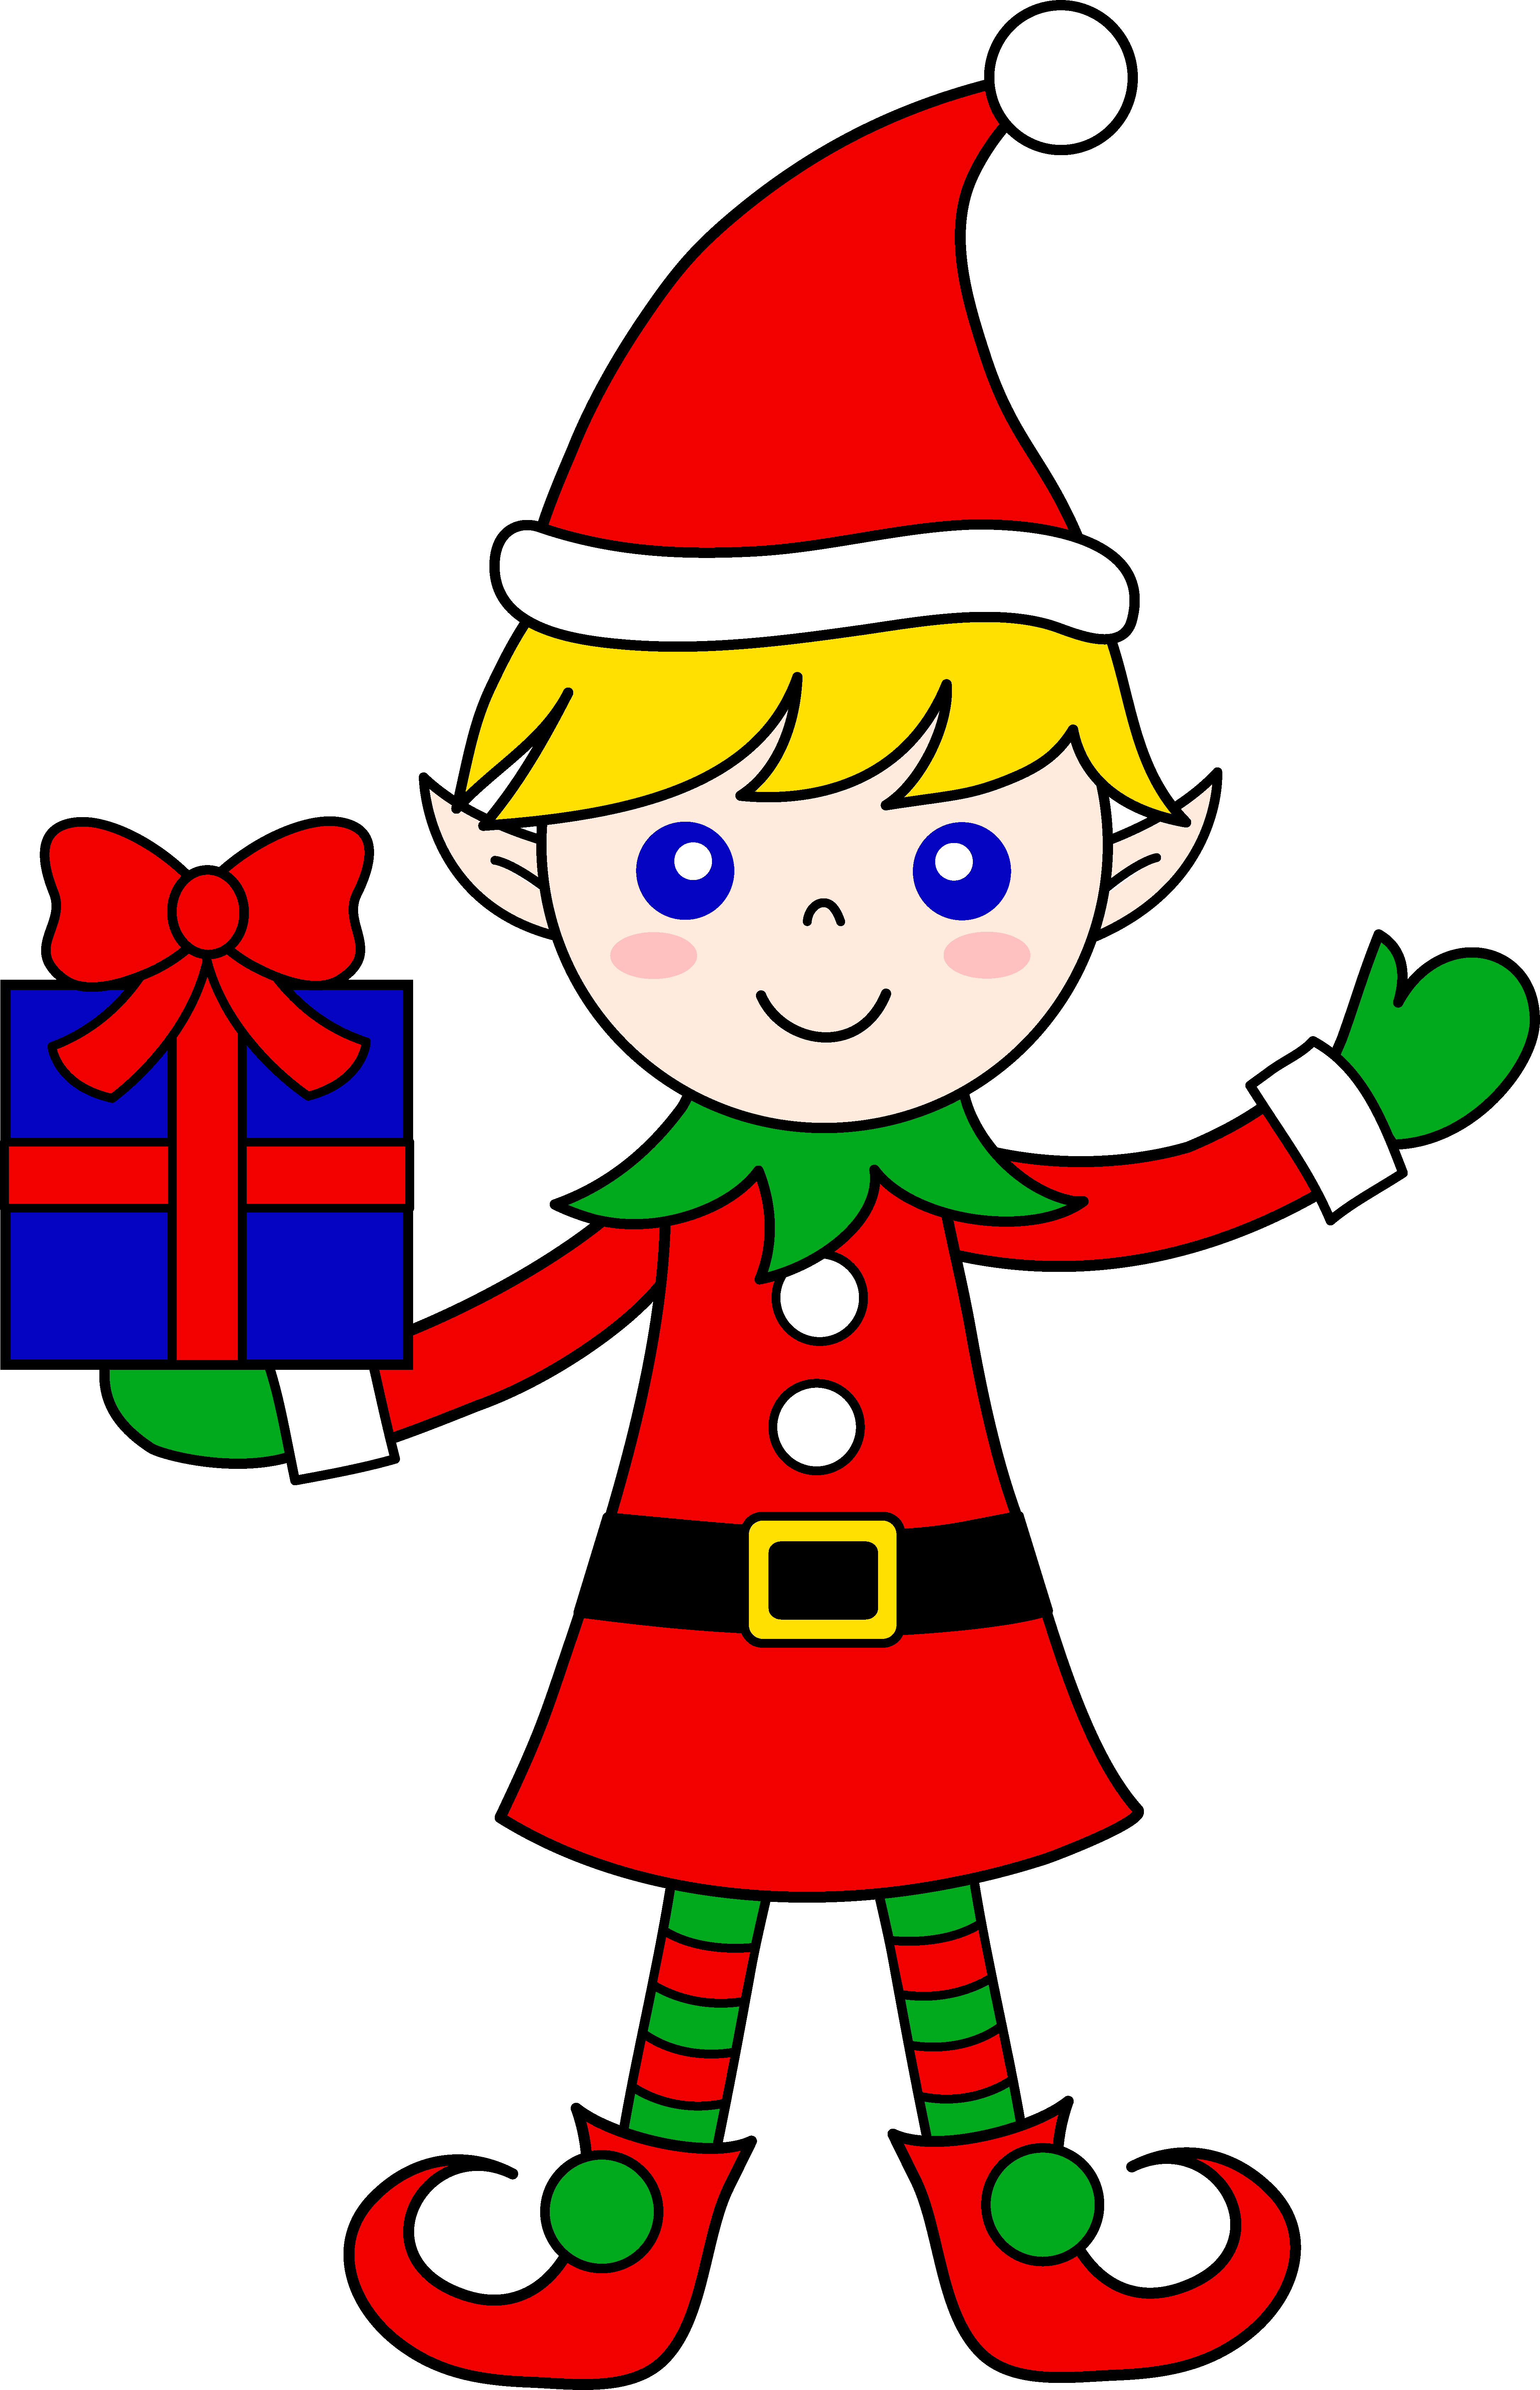 Cute Christmas Elf Clip Art - Christmas Elves Clipart